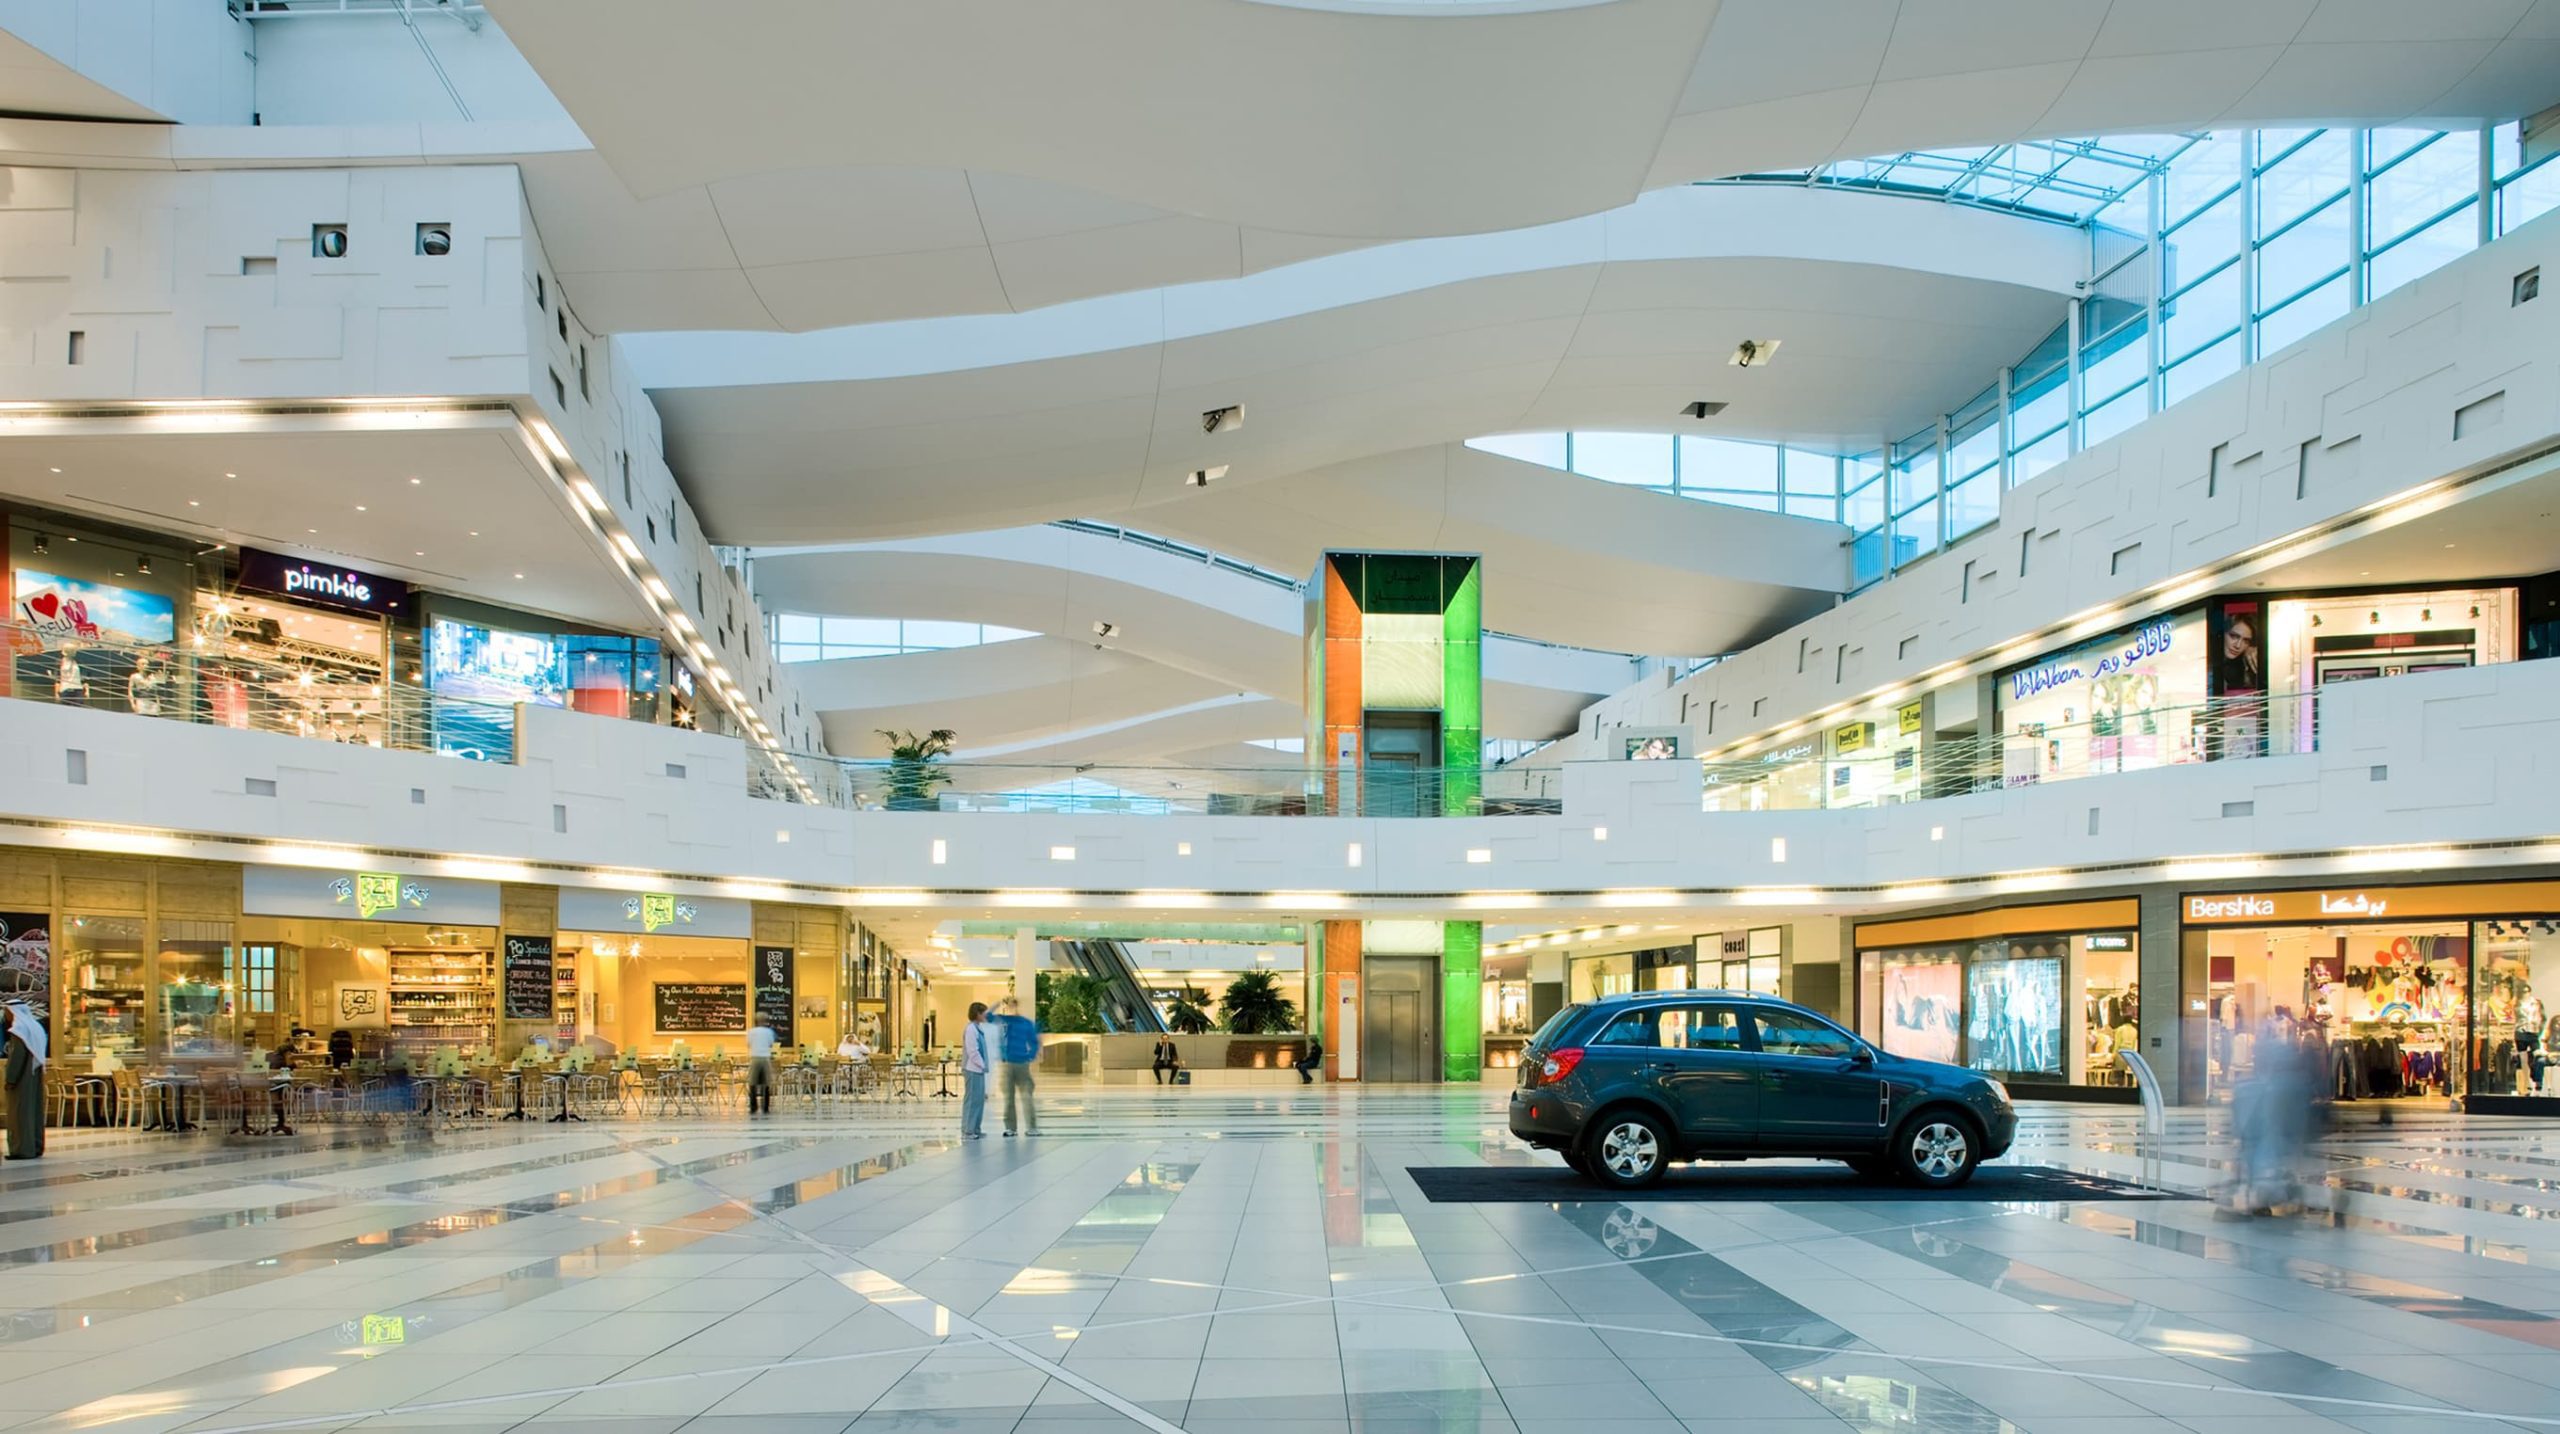 The Avenues Mall Kuwait using Visioglobe technology